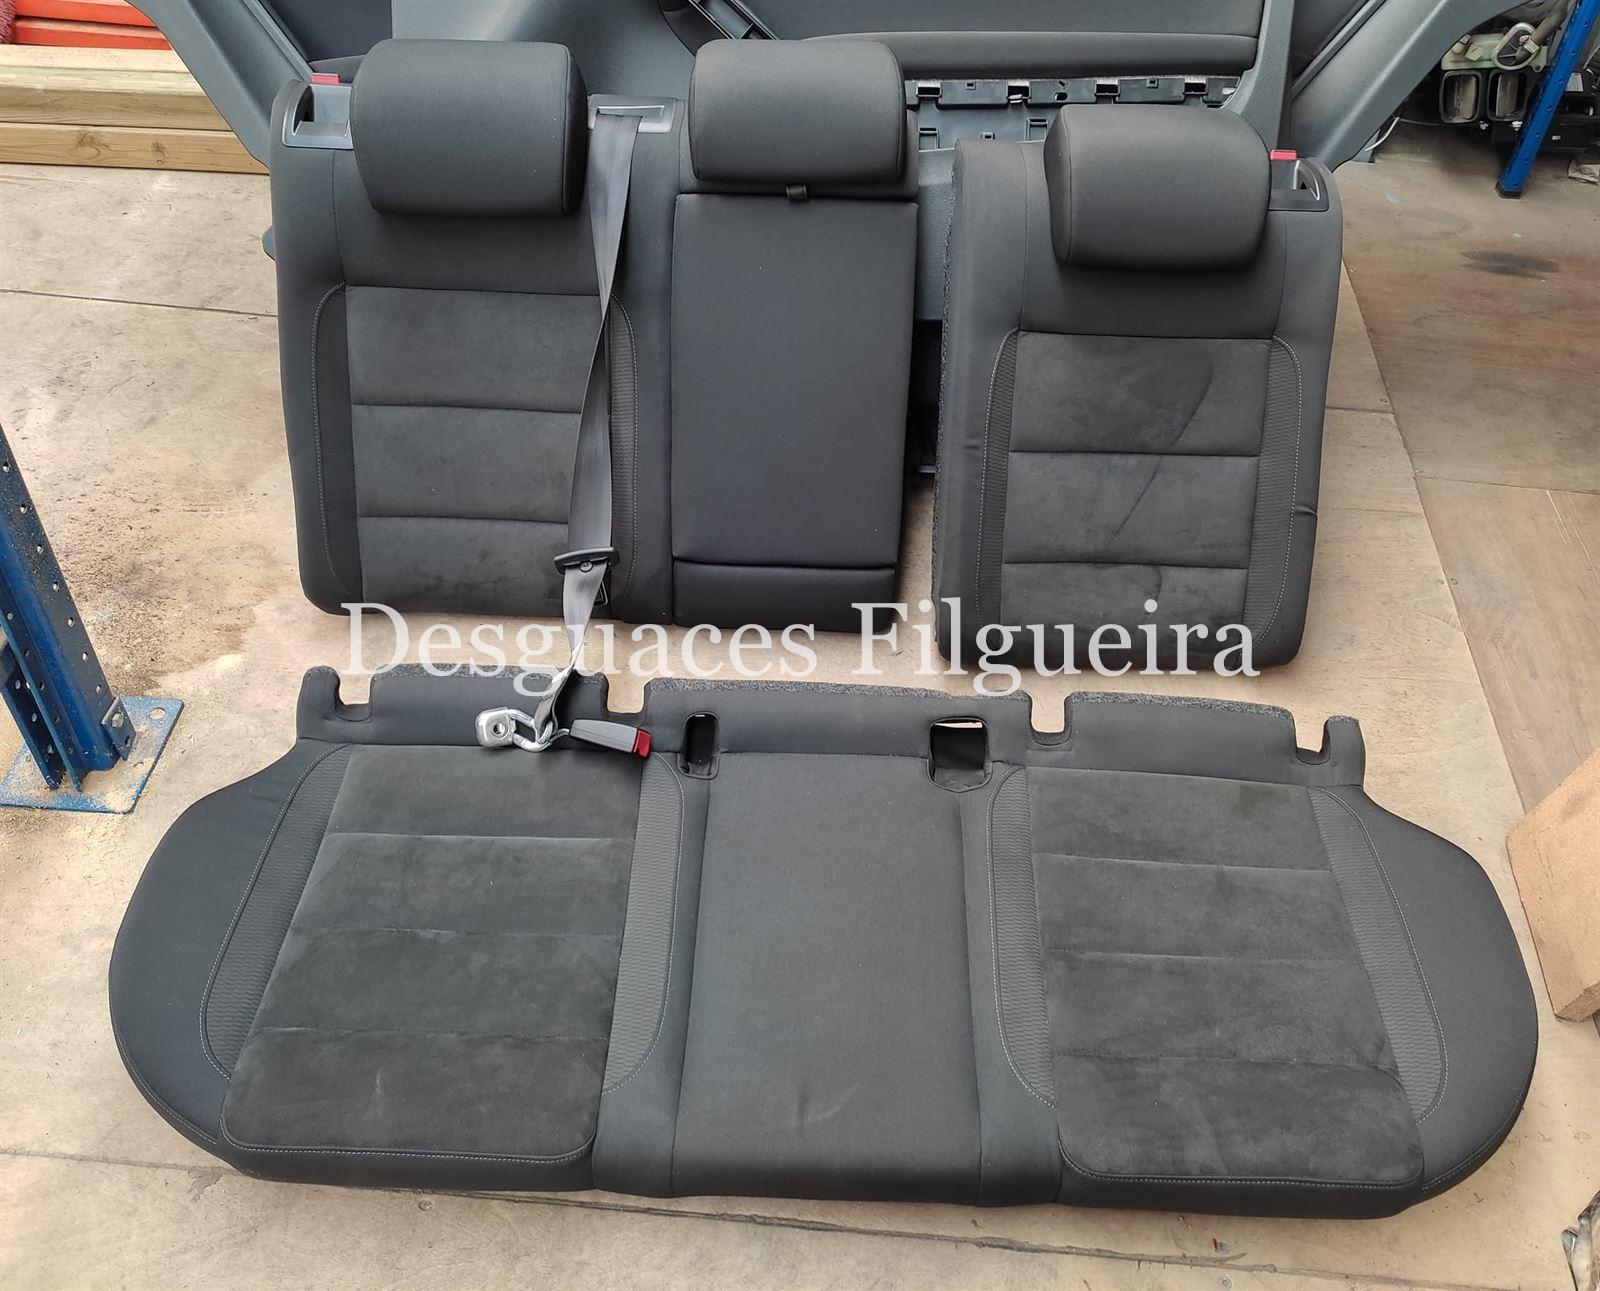 Juego de asientos y paneles Volkswagen Golf VI 2.0 TDI 3 puertas - Imagen 5